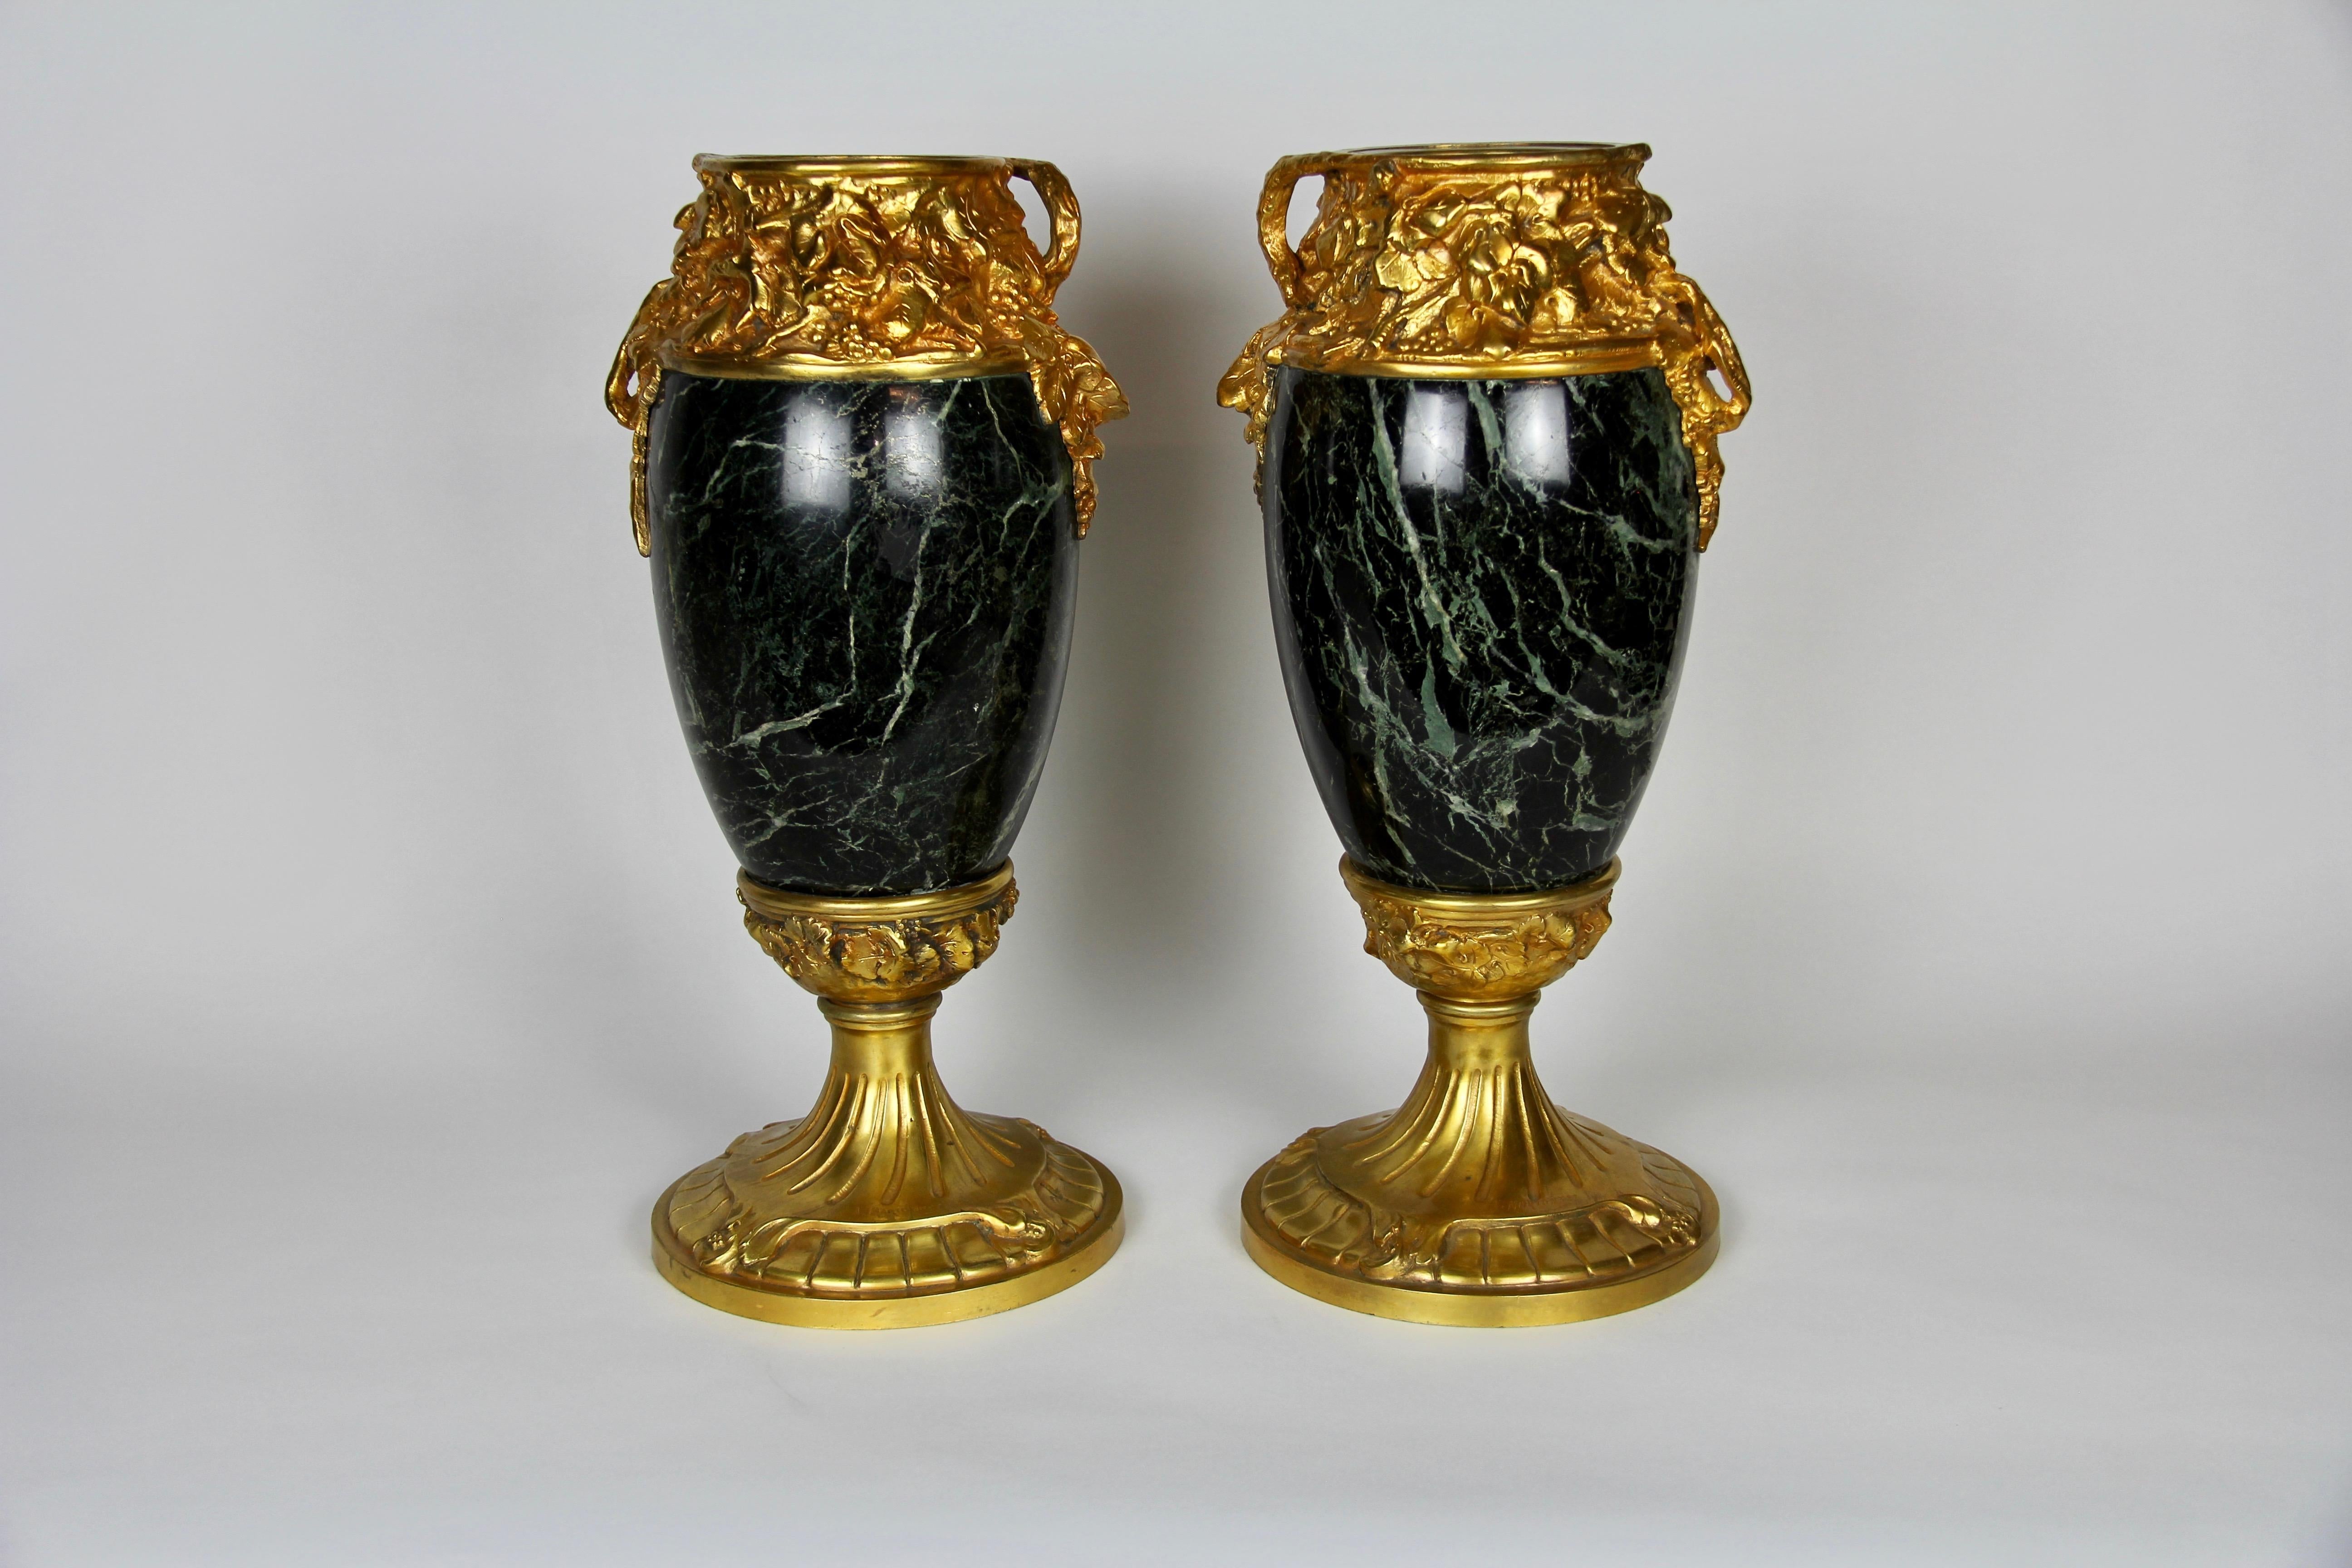 Ein fabelhaftes Paar französischer Art Nouveau Dore Bronze montiert Verde Antico Marmor Vasen, signiert A. Marionnet. Von eiförmiger Form mit wunderschön handgeschnitztem Verde Antico-Marmorkörper. Die Bronze ist gegossen, von Hand ziseliert und mit